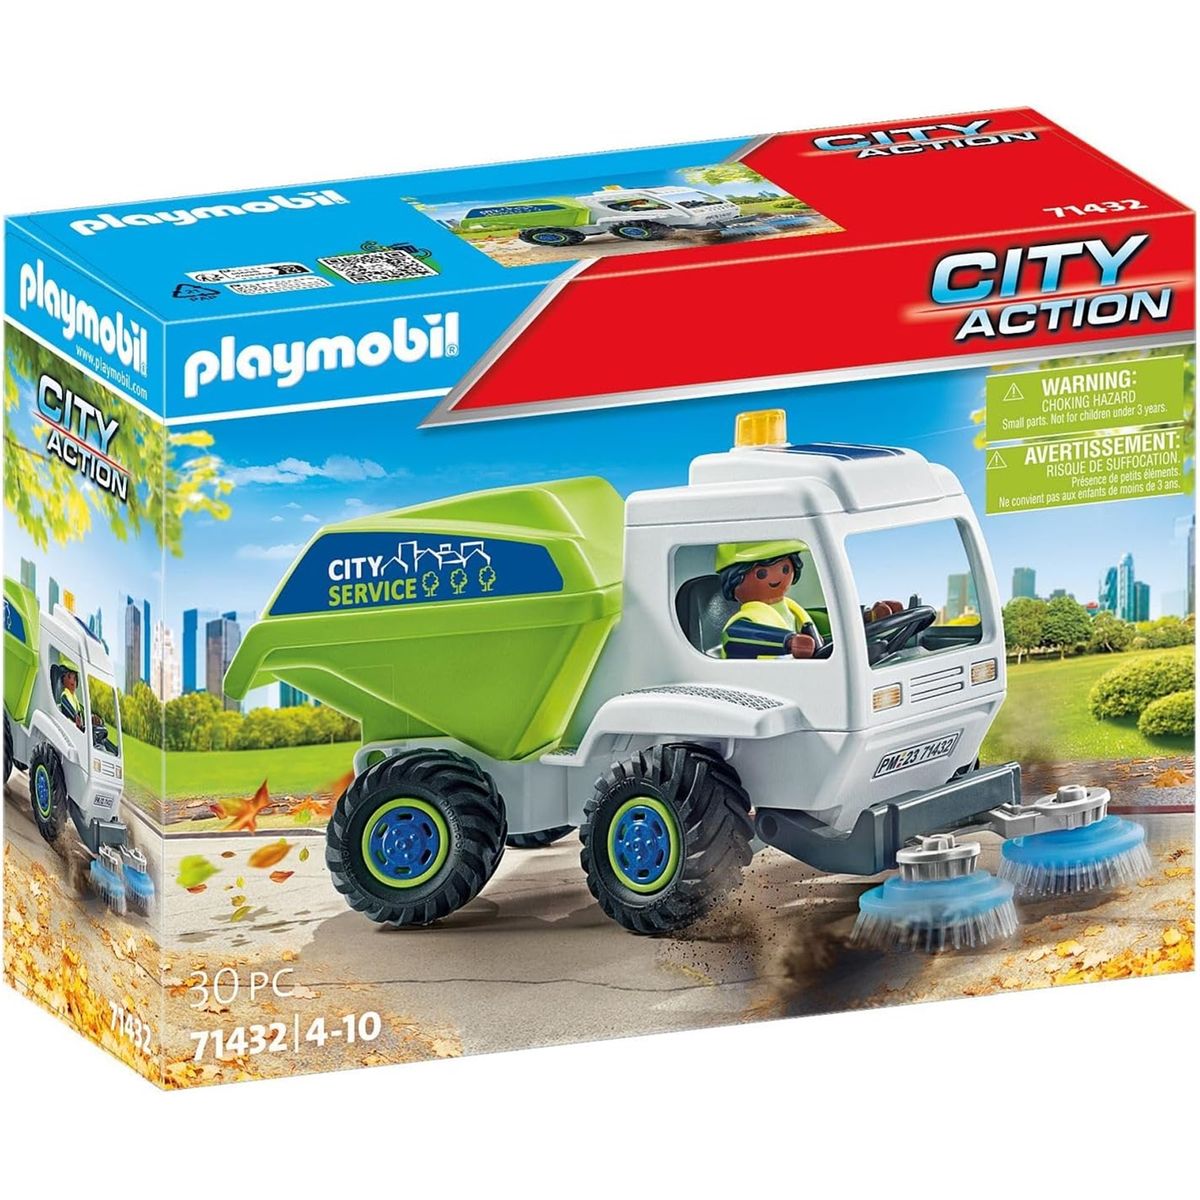 Camion de recyclage Playmobil, 4 ans et plus